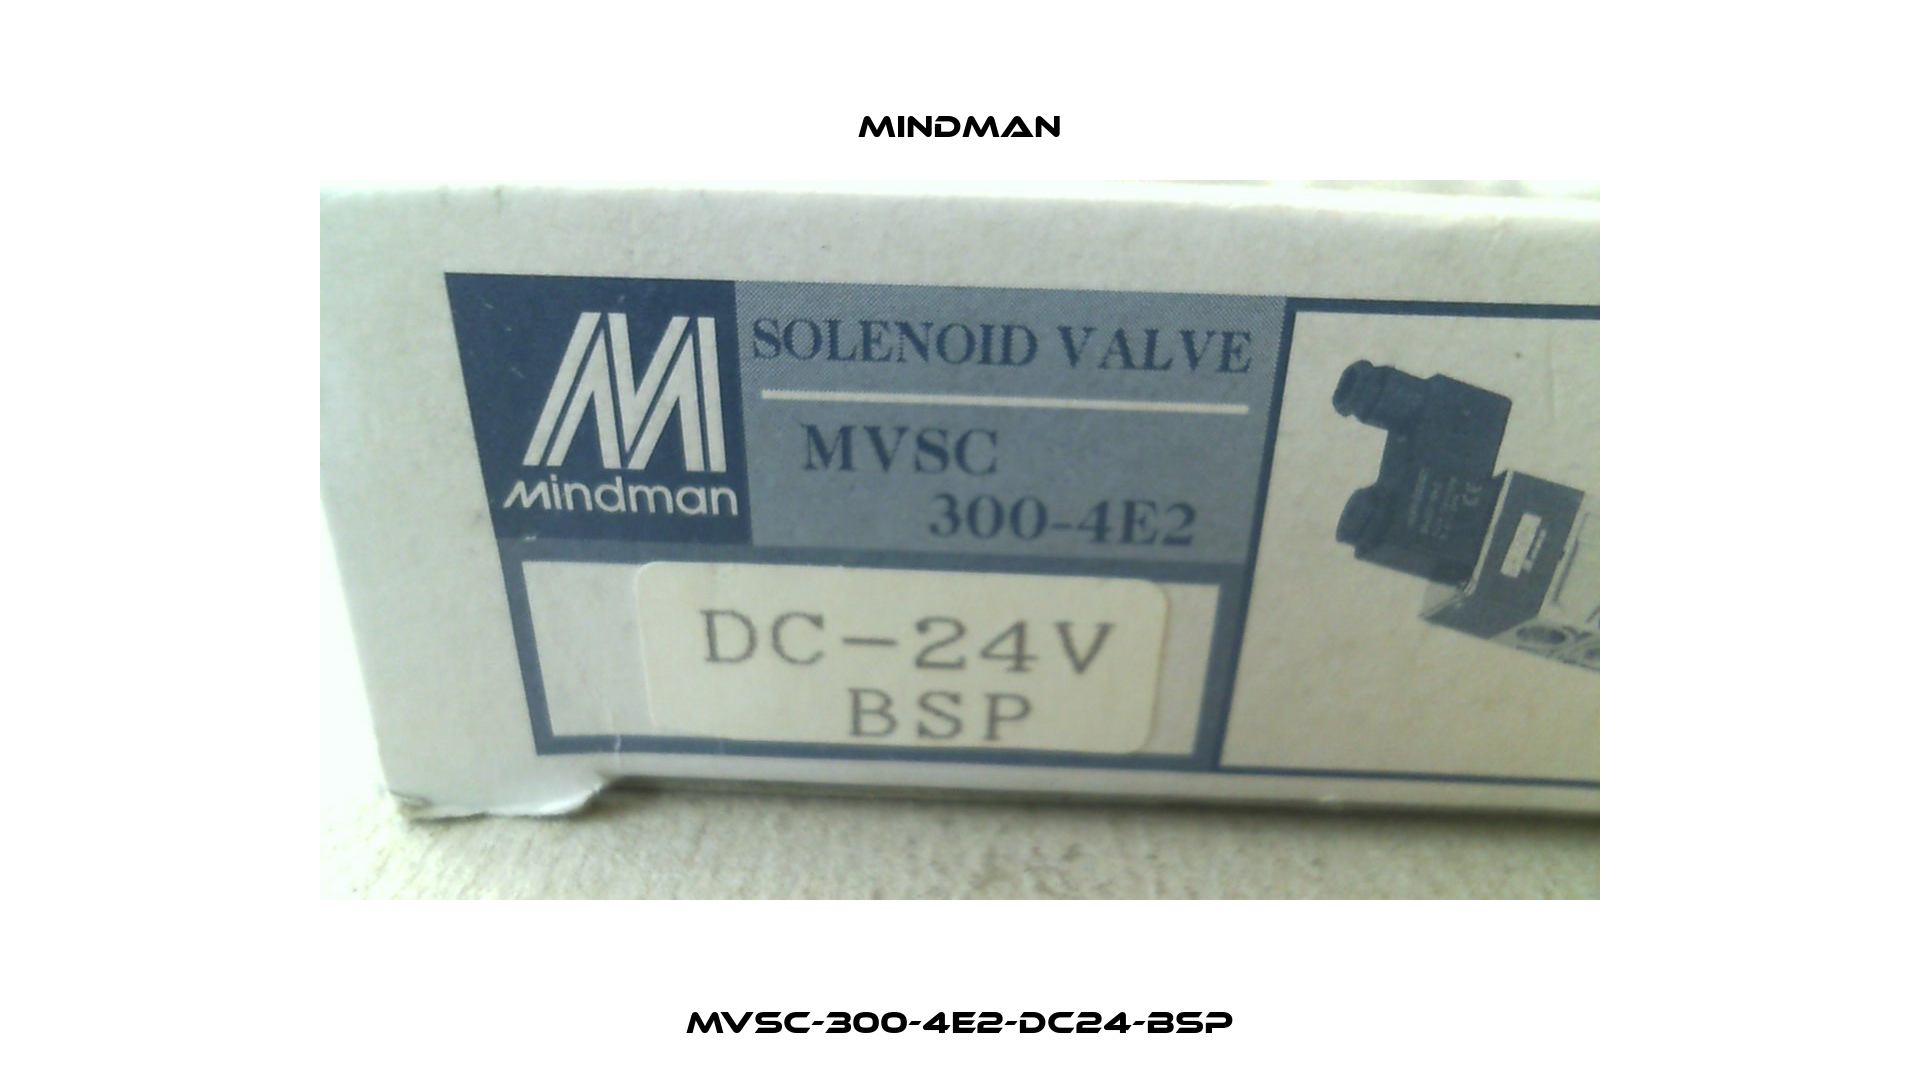 MVSC-300-4E2-DC24-BSP Mindman